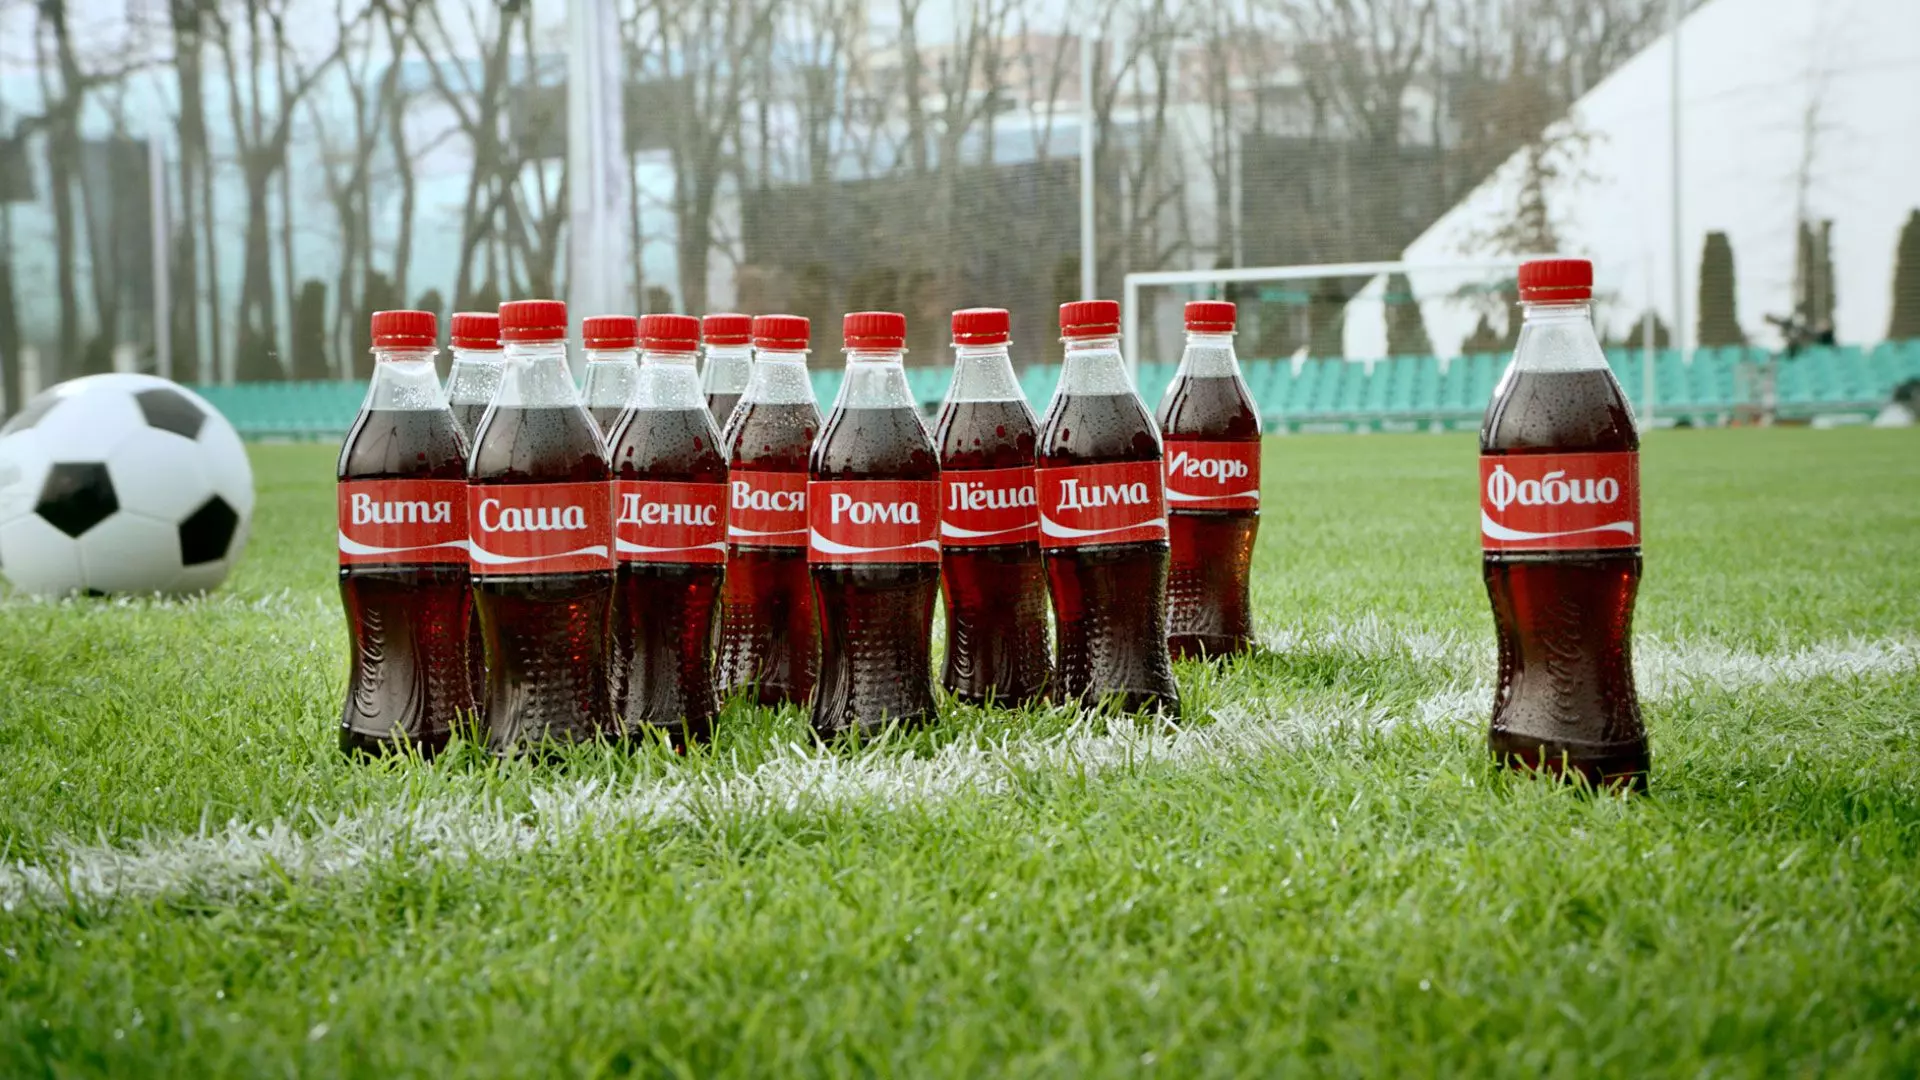 Неужели маркетологи Coca-Cola решили, что имя Фабио – популярное в России?